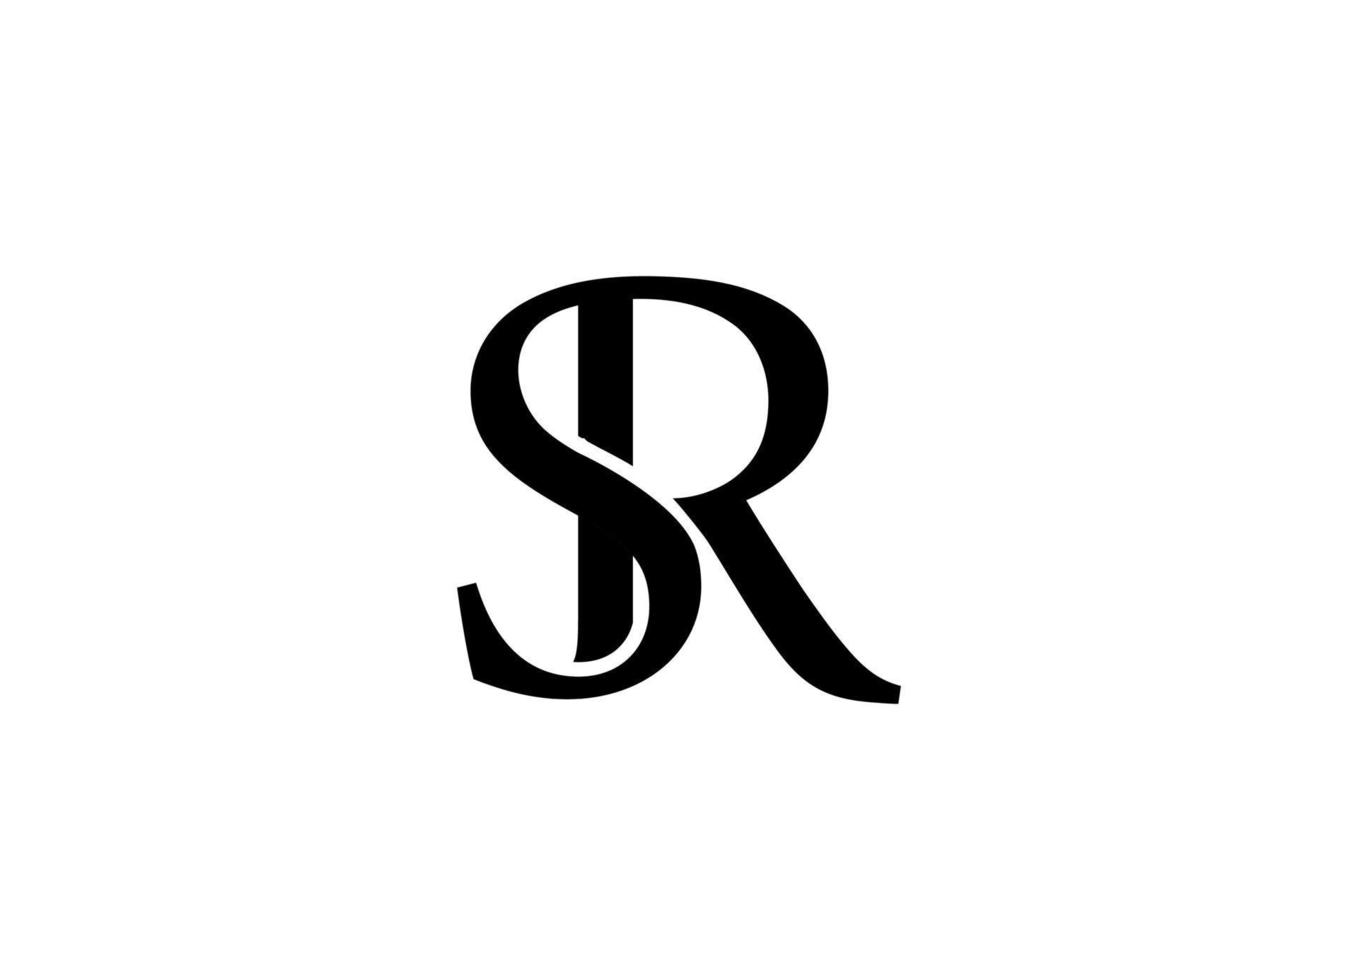 Archivo de vector libre de diseño de logotipo sr